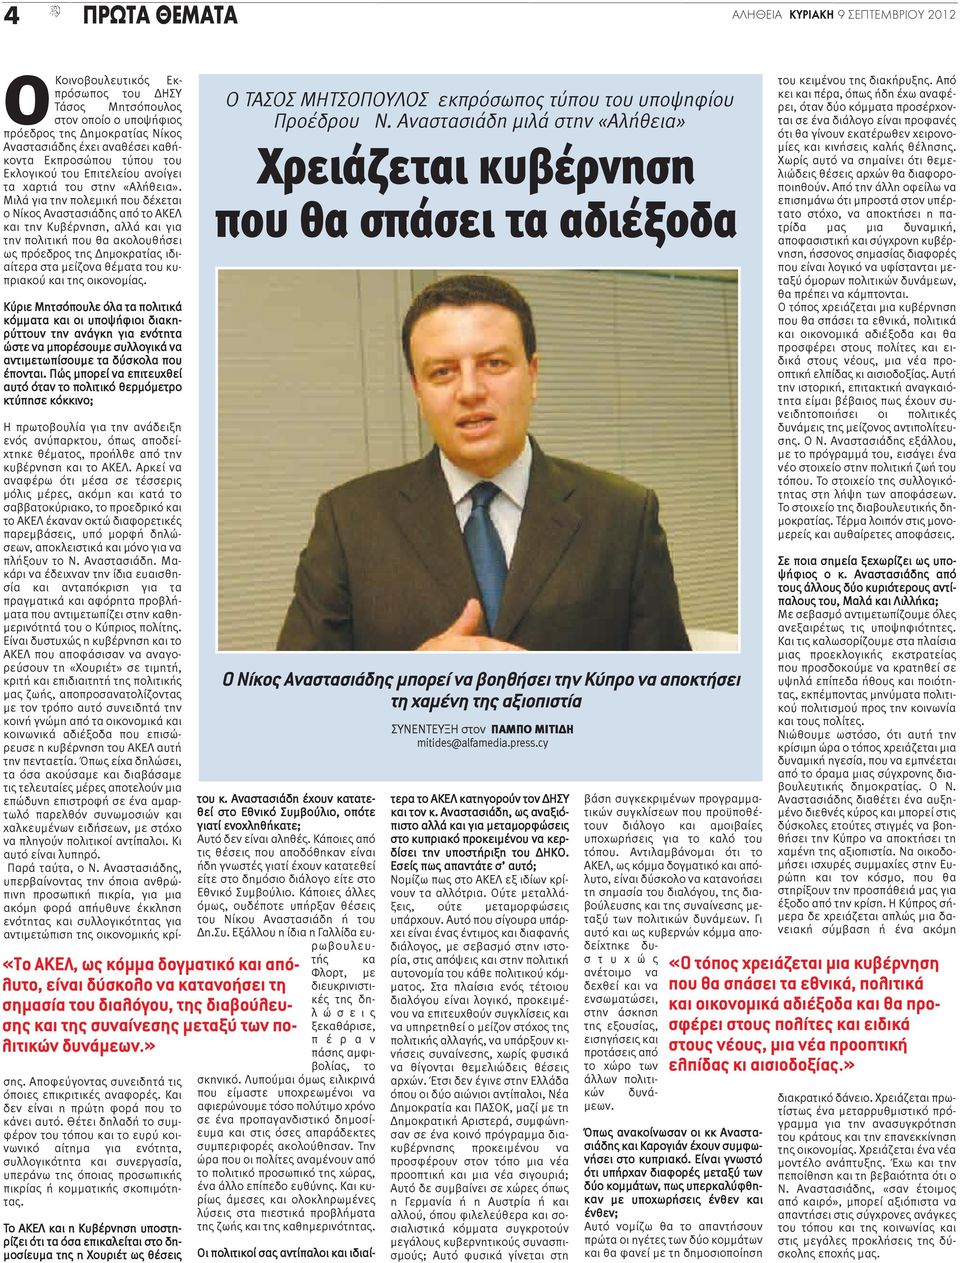 Μιλά για την πολεμική που δέχεται ο Νίκος Αναστασιάδης από το ΑΚΕΛ και την Κυβέρνηση, αλλά και για την πολιτική που θα ακολουθήσει ως πρόεδρος της Δημοκρατίας ιδιαίτερα στα μείζονα θέματα του